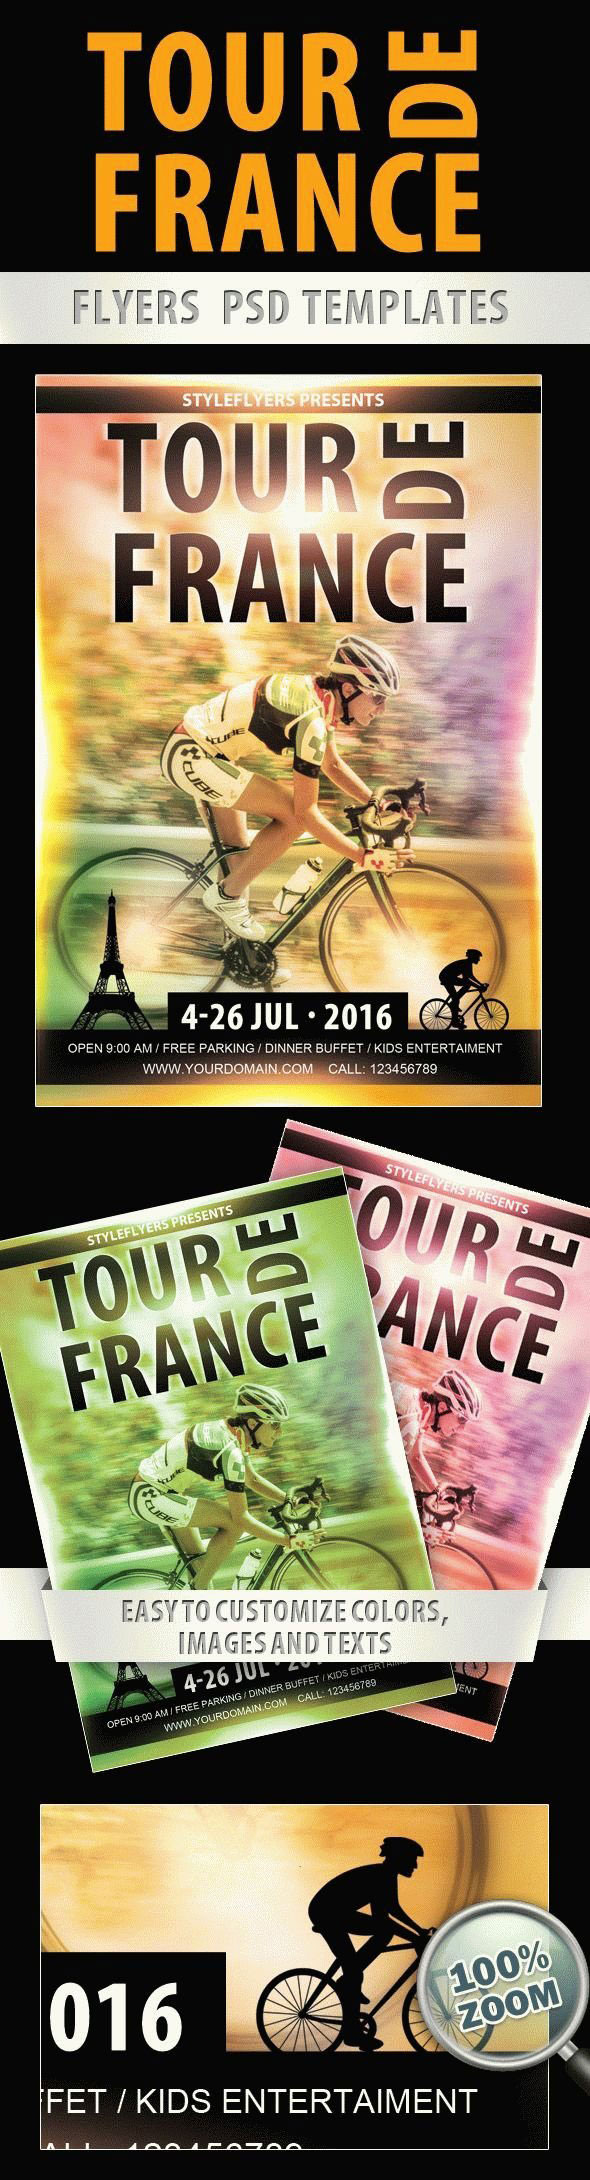 Modern Photo Tour De France Flyer Template FREE PSD